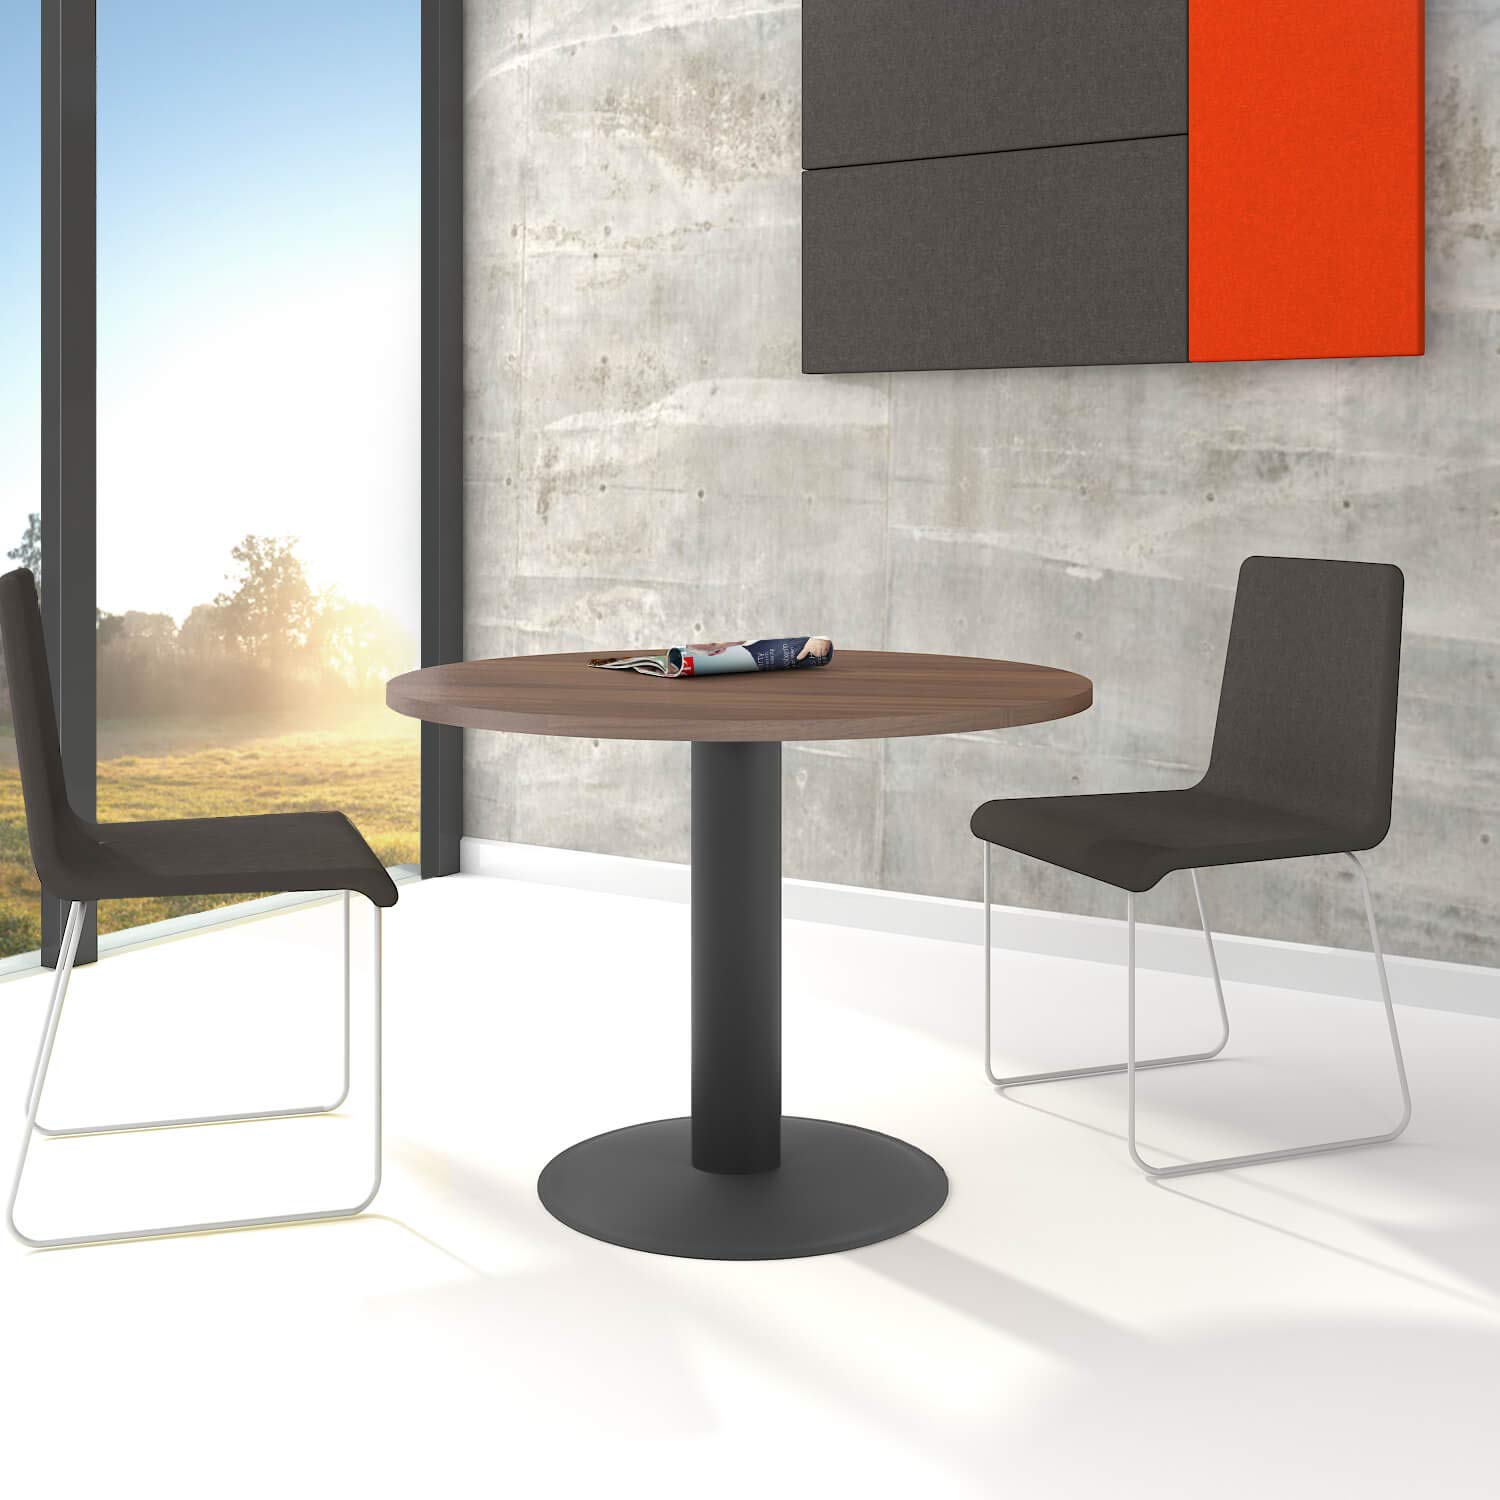 Weber Büro Optima runder Besprechungstisch Ø 100 cm Nussbaum Anthrazites Gestell Tisch Esstisch